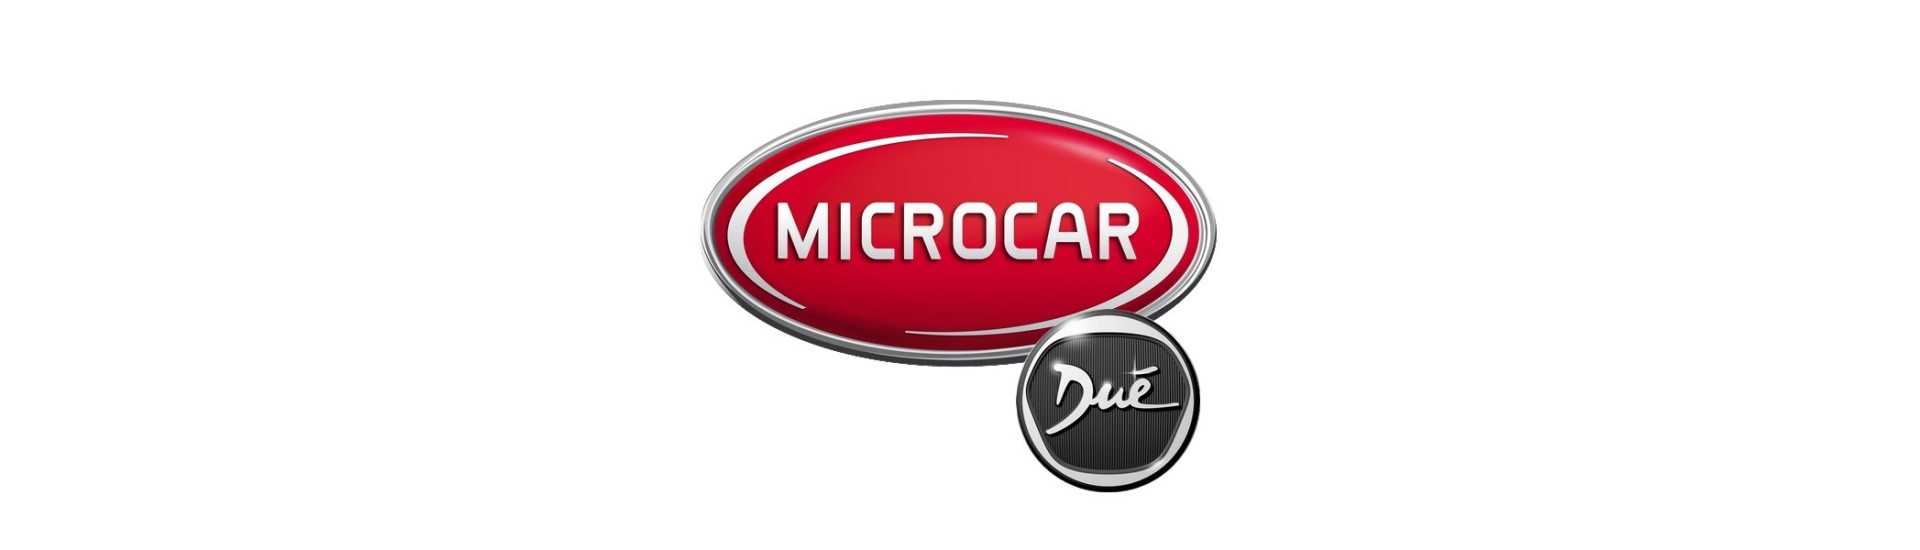 Hand-Bremskabel Besser Preis Auto ohne Lizenz Microcar Dué